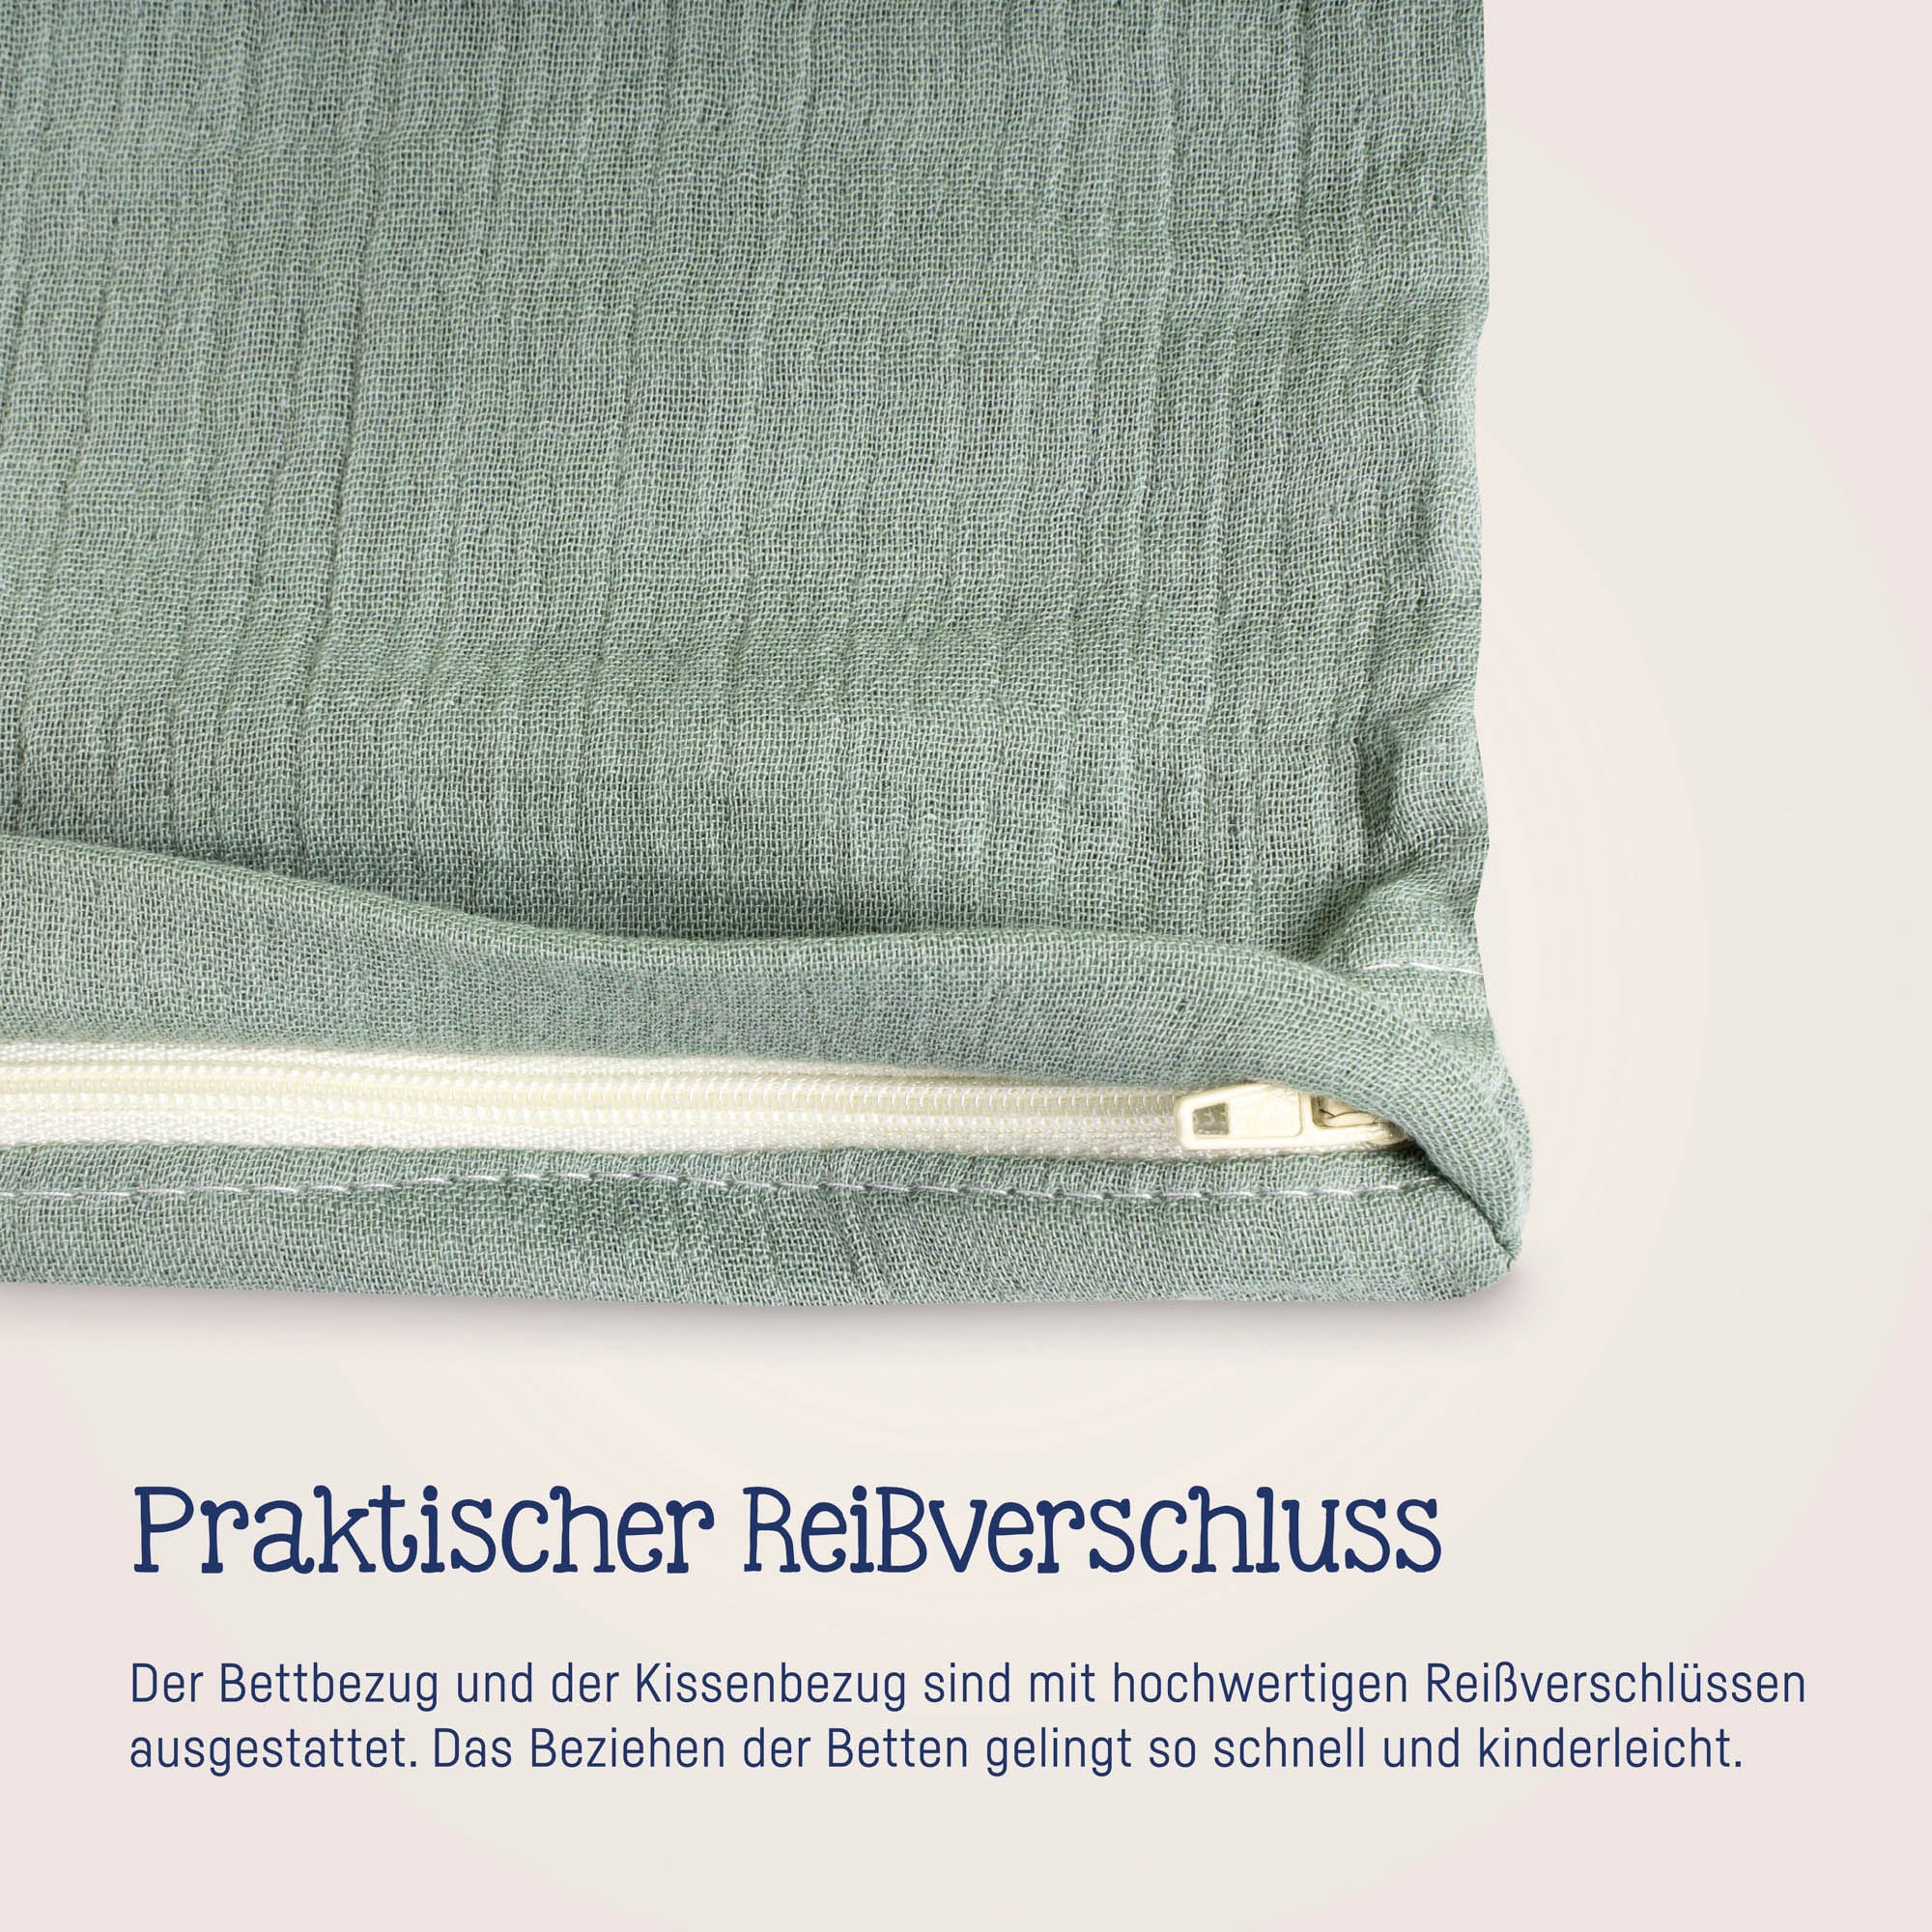 Julius Zöllner Kinderbettwäsche »Baby- und Kinderbettwäsche aus 100% Musselin«, (2 tlg.), erhältlich in den Größen 80x80+35x40cm und 100x135+40x60cm